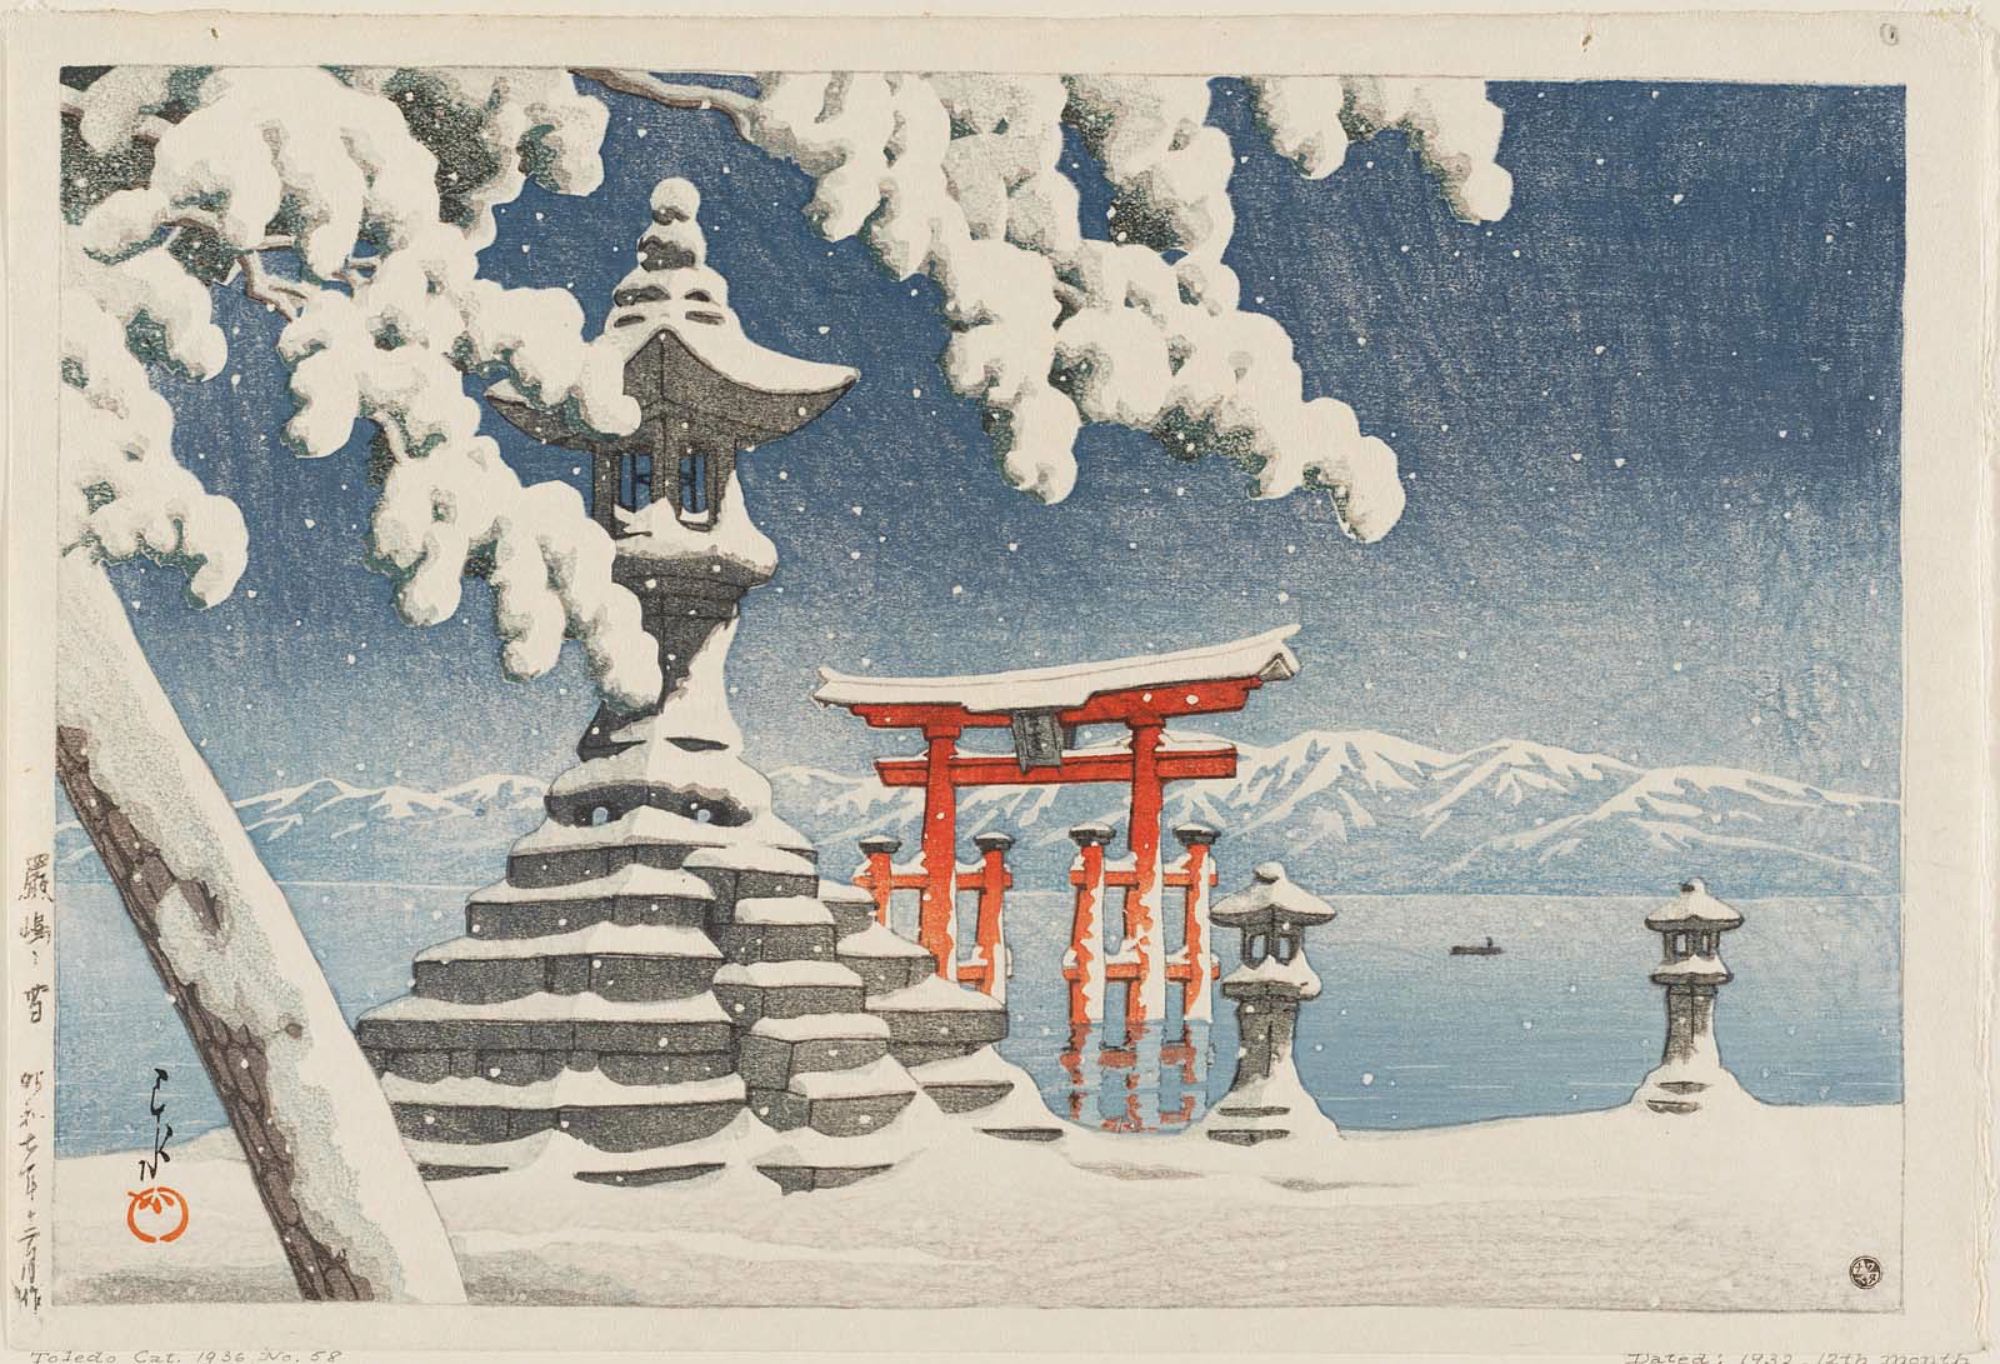 严岛雪景 by 川濑巴水  - 1932 - 26.5 × 39.5 cm 芝加哥藝術博物館